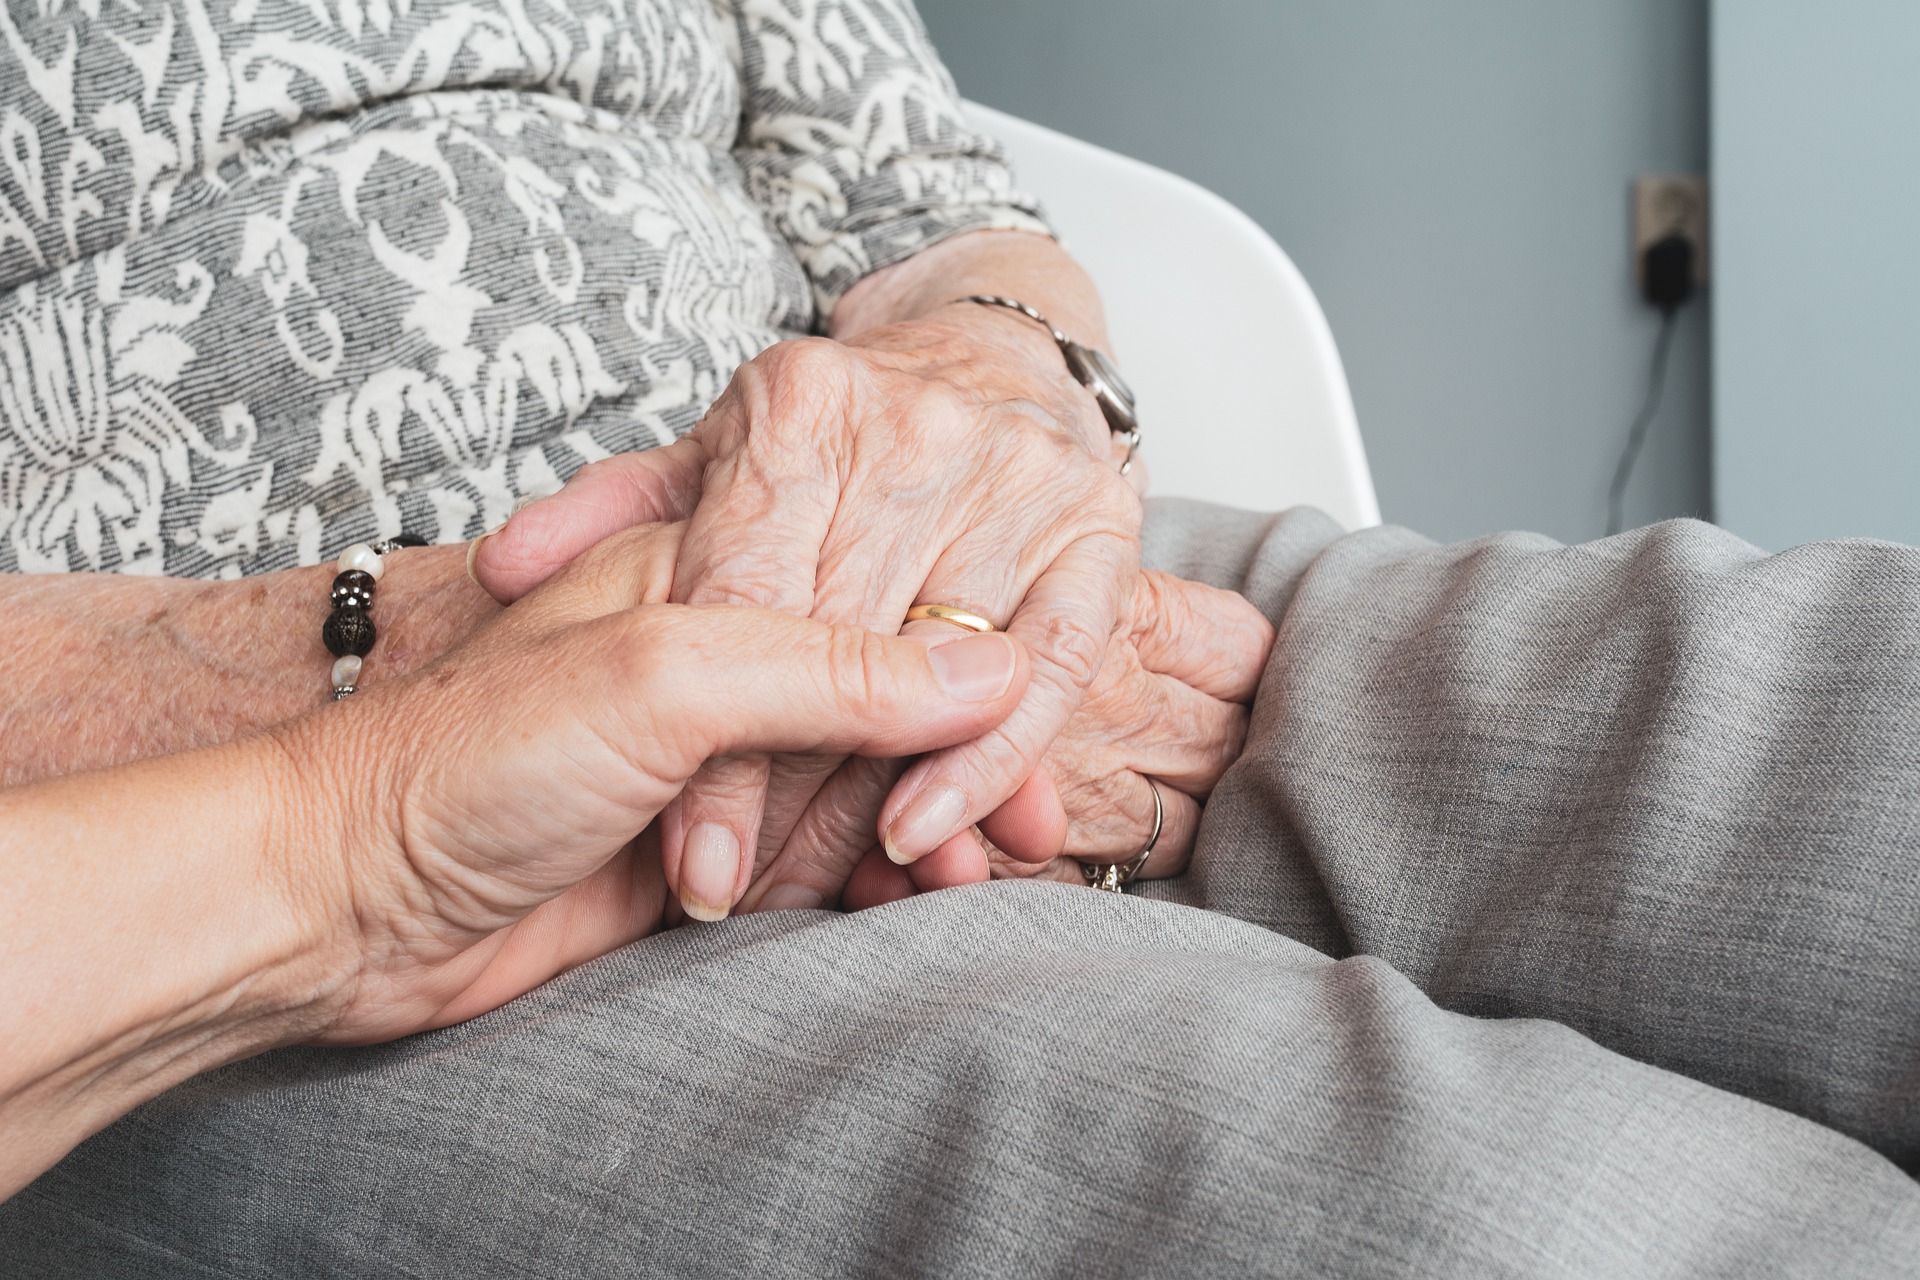 Polnische Pflegekraft hält die Hand einer Seniorin